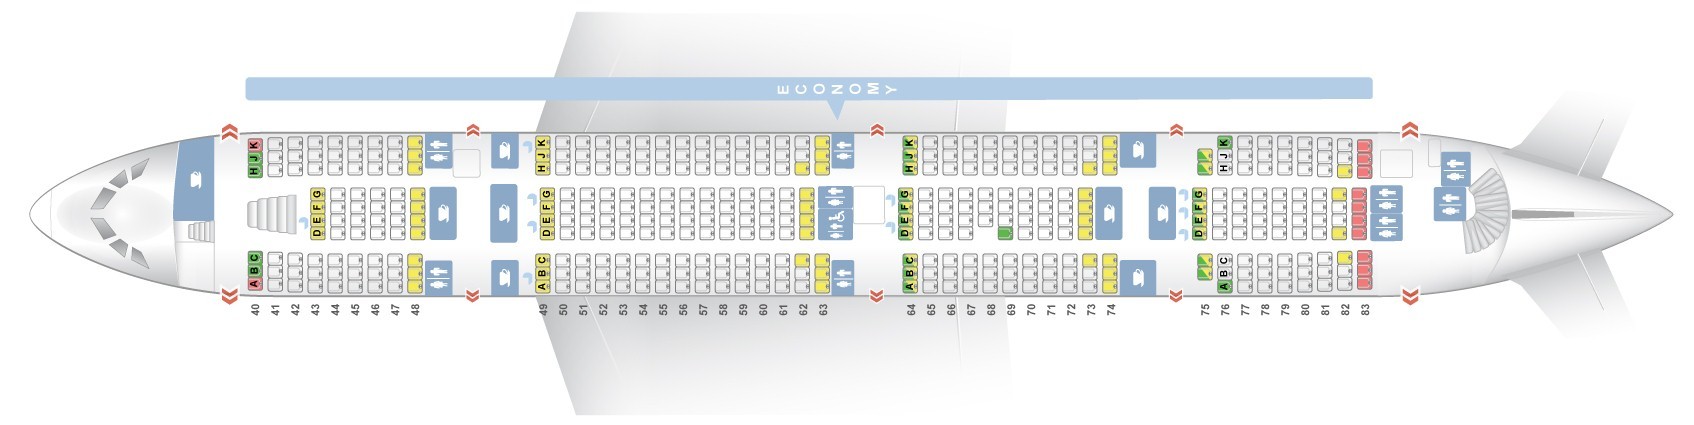 Etihad Airways Seating Chart